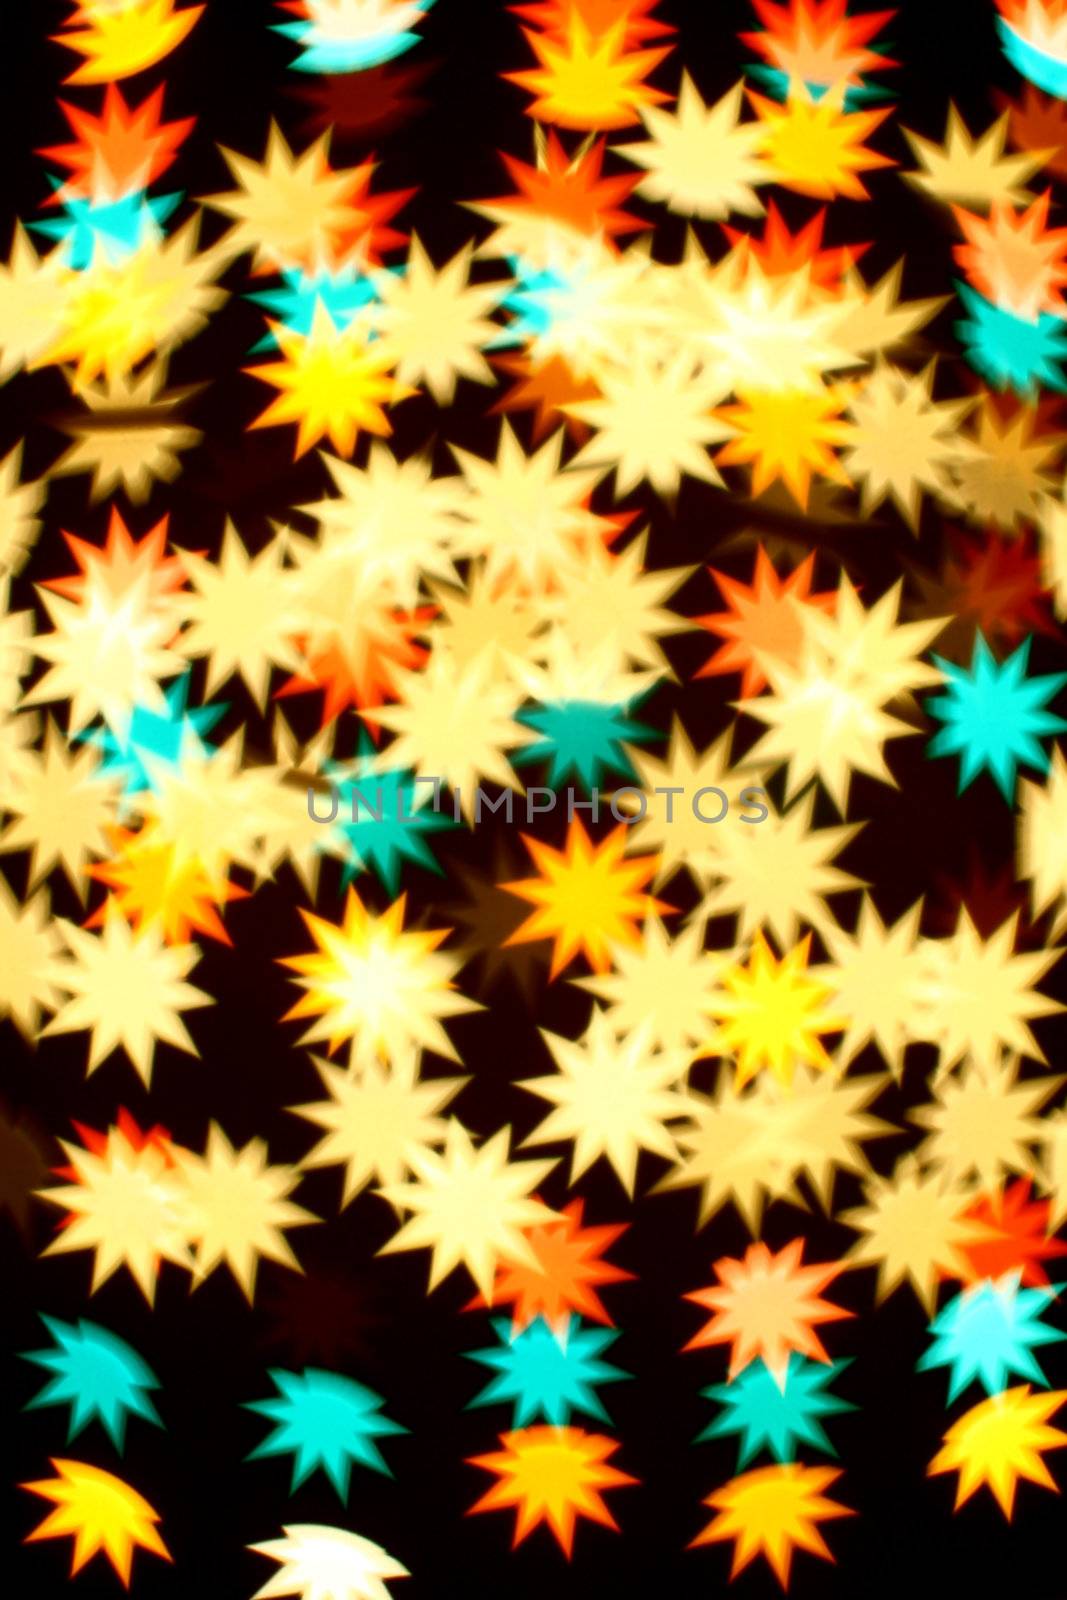 bokeh stars by Yellowj